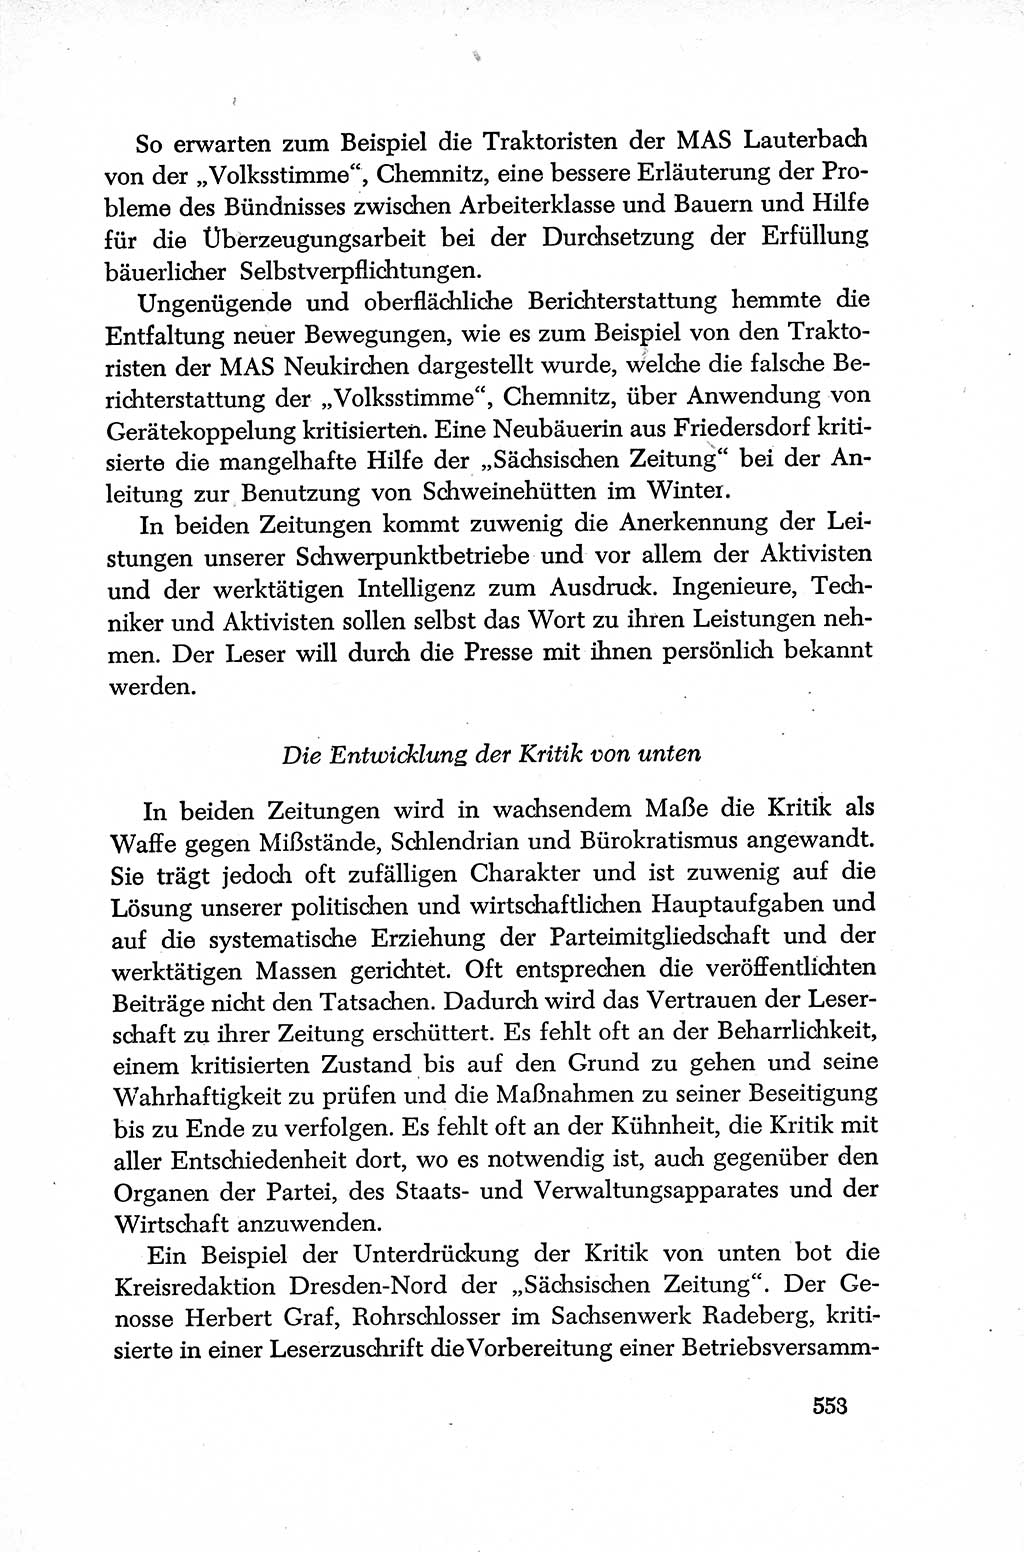 Dokumente der Sozialistischen Einheitspartei Deutschlands (SED) [Deutsche Demokratische Republik (DDR)] 1952-1953, Seite 553 (Dok. SED DDR 1952-1953, S. 553)